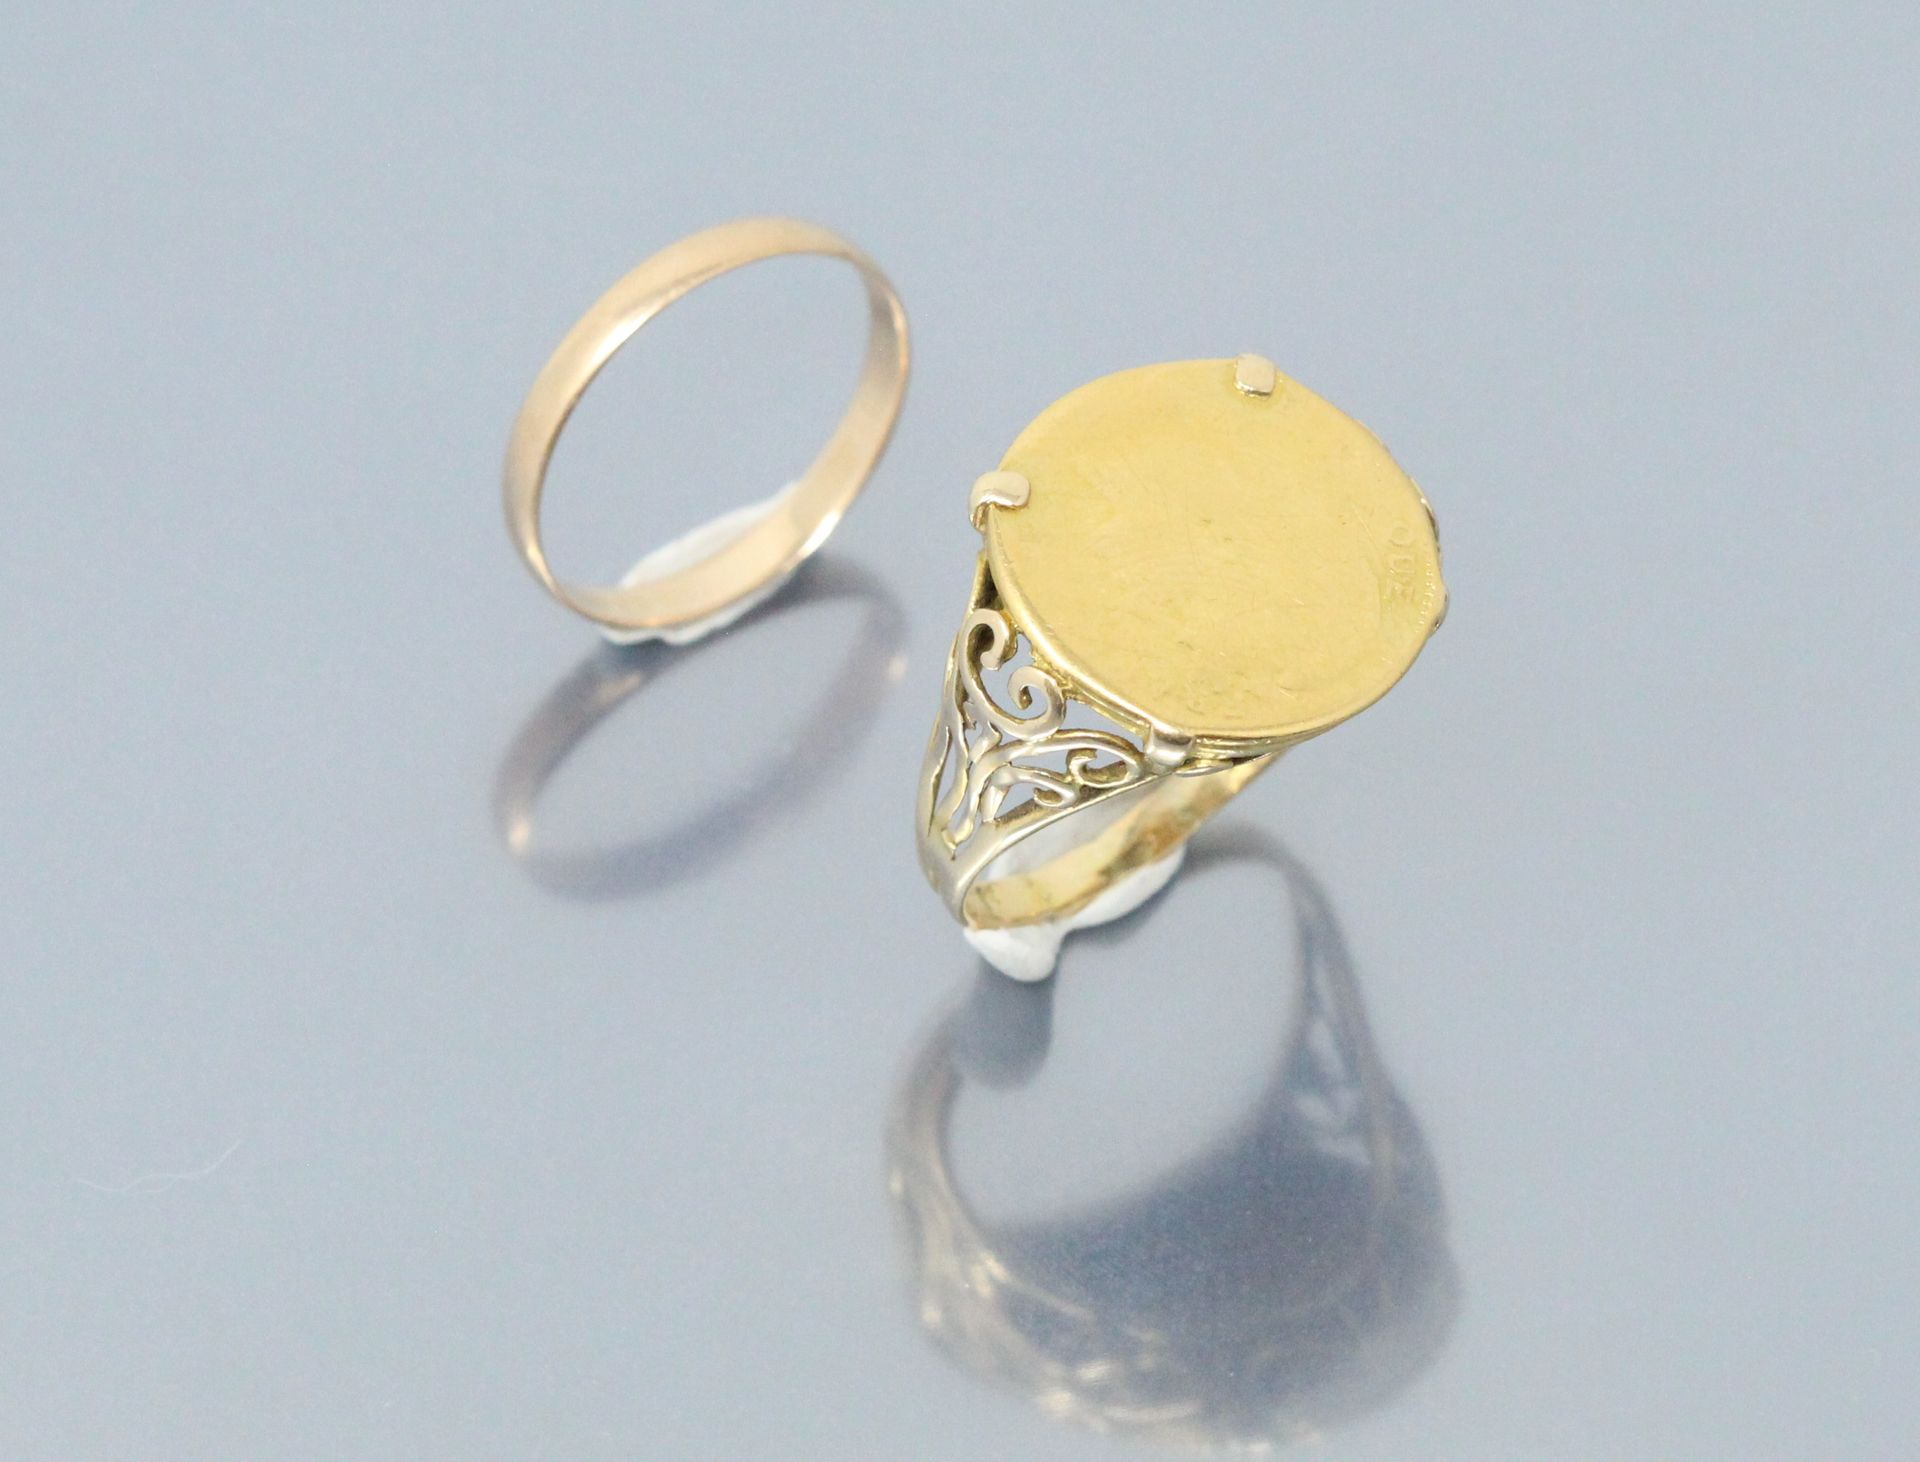 Null 18K（750）黄金：用20法郎的Coq硬币制作的签章戒指（磨损严重）和一枚结婚戒指（未刻字）。

重量：8.60克。